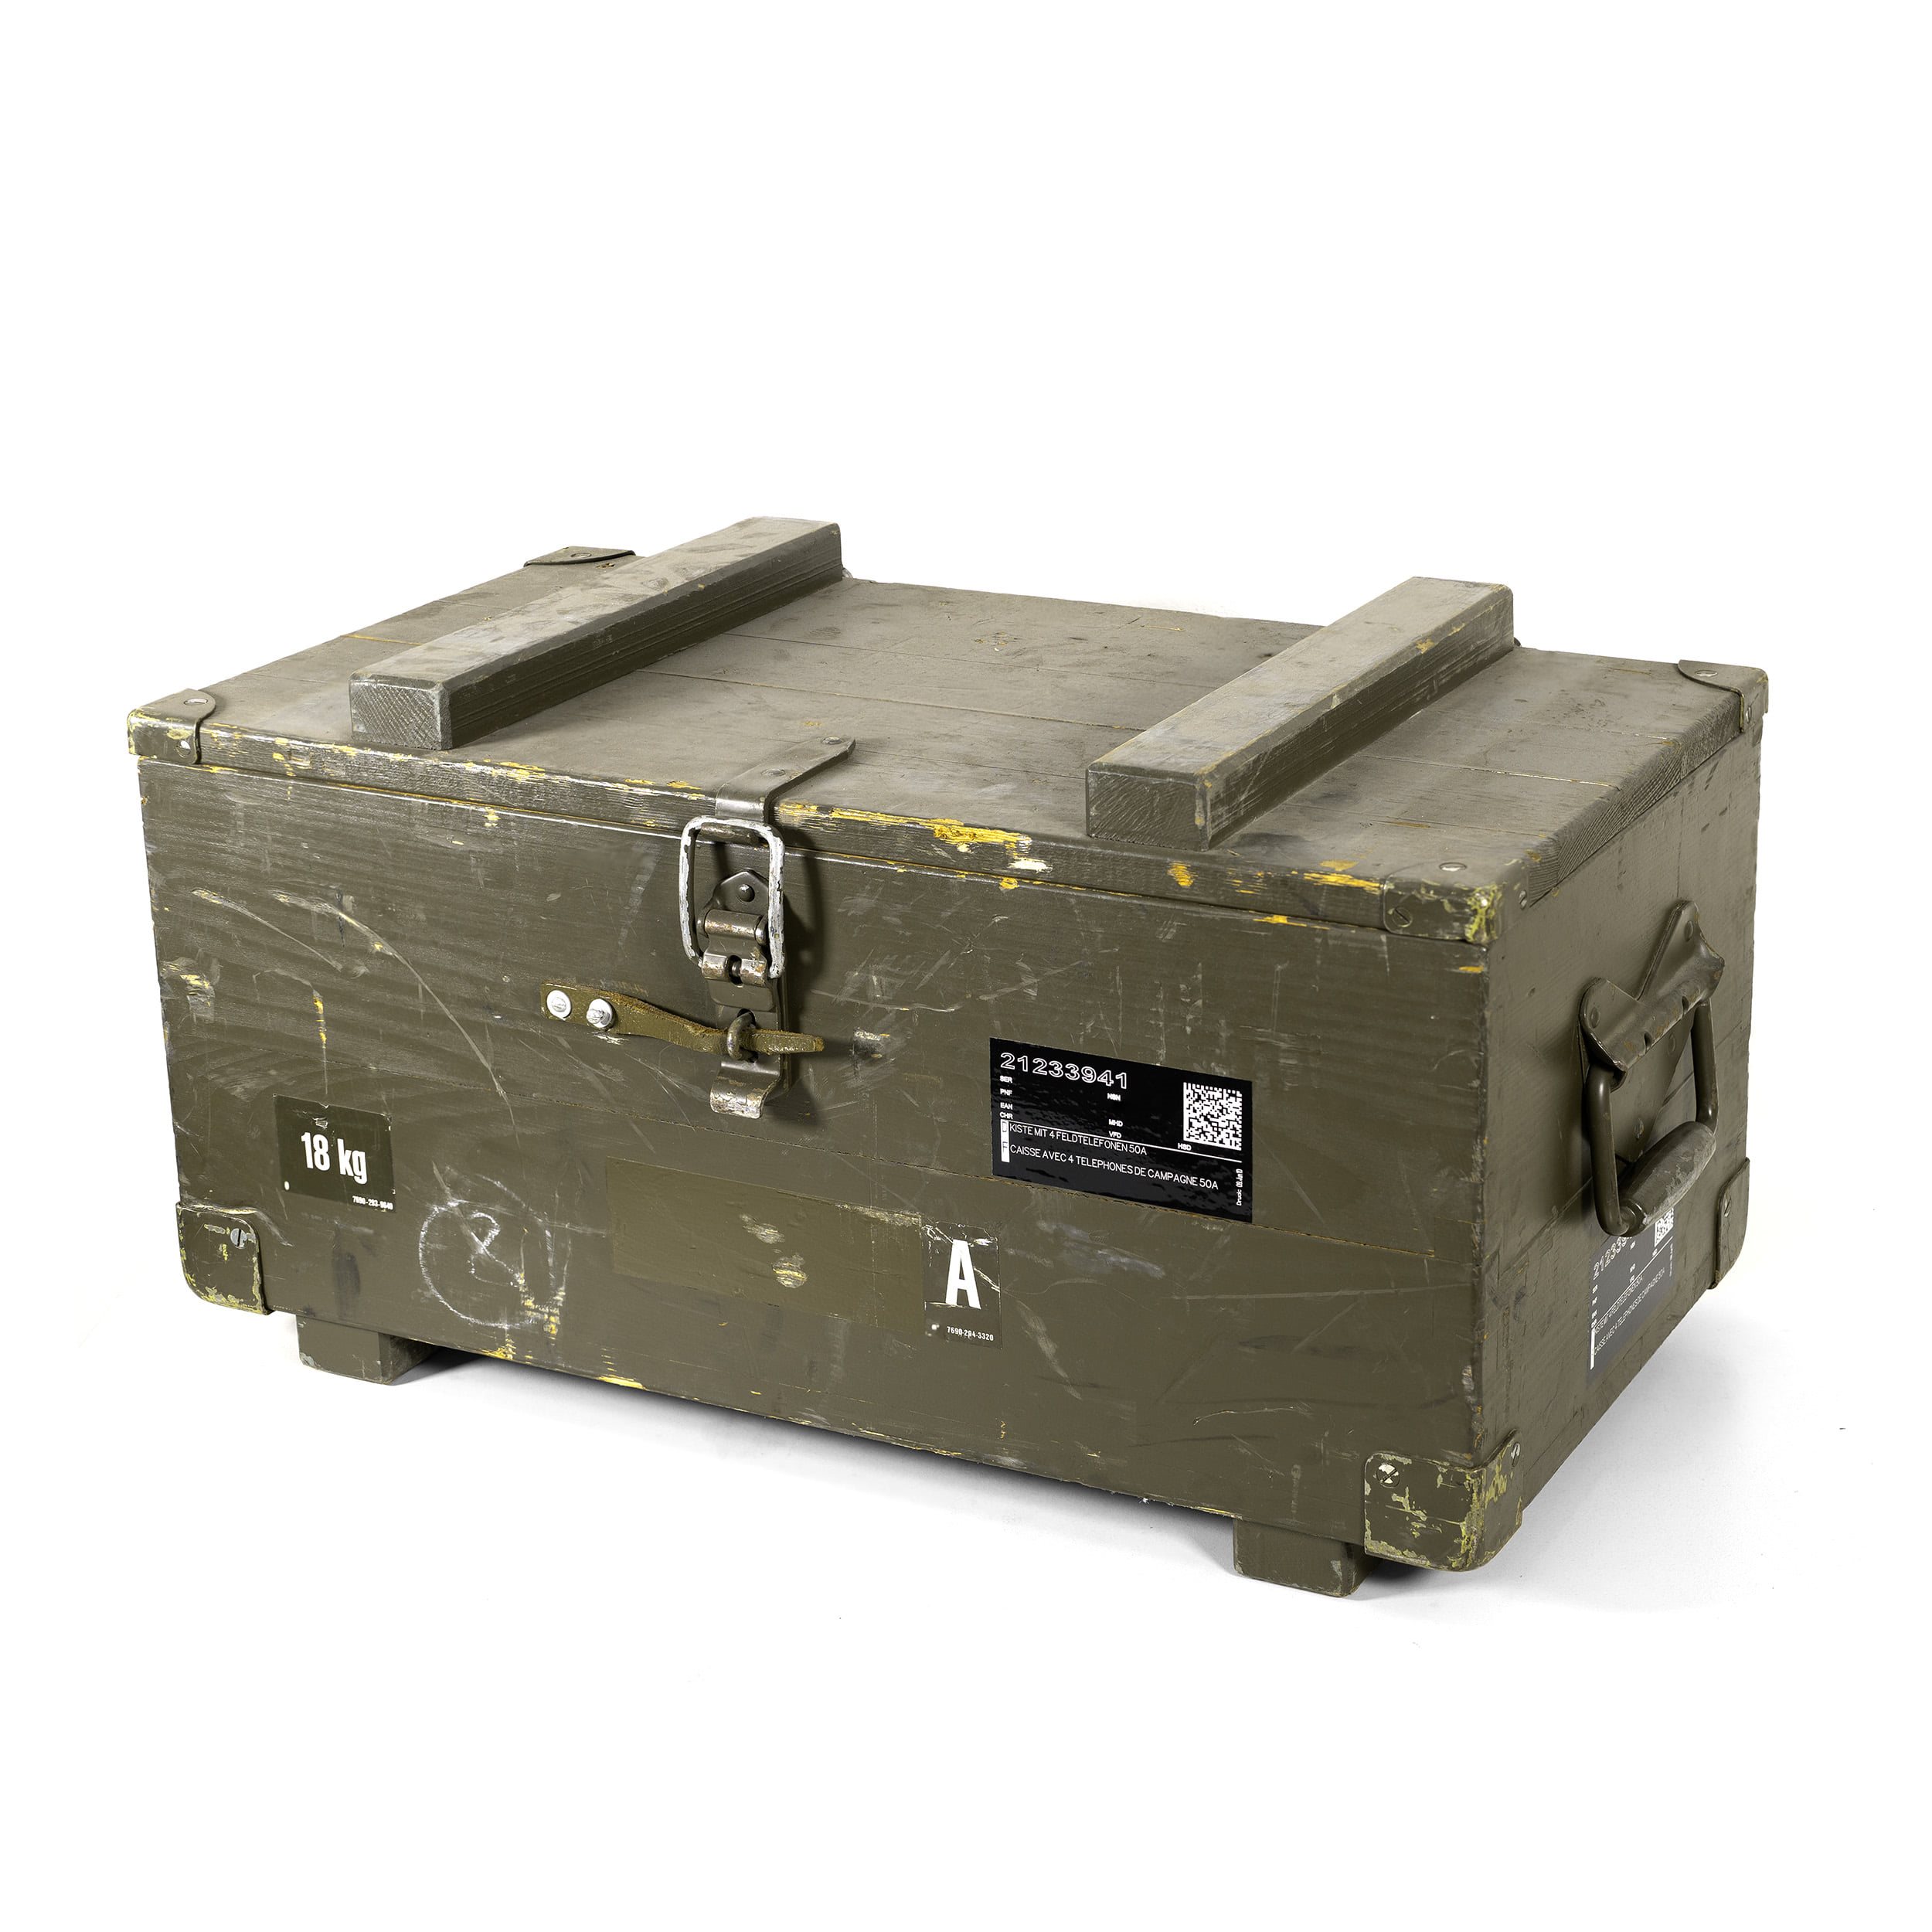 Holzkiste von Feldtelefonen SCHWEIZ gebraucht Schweizer Armee  DIV066BOX L-11